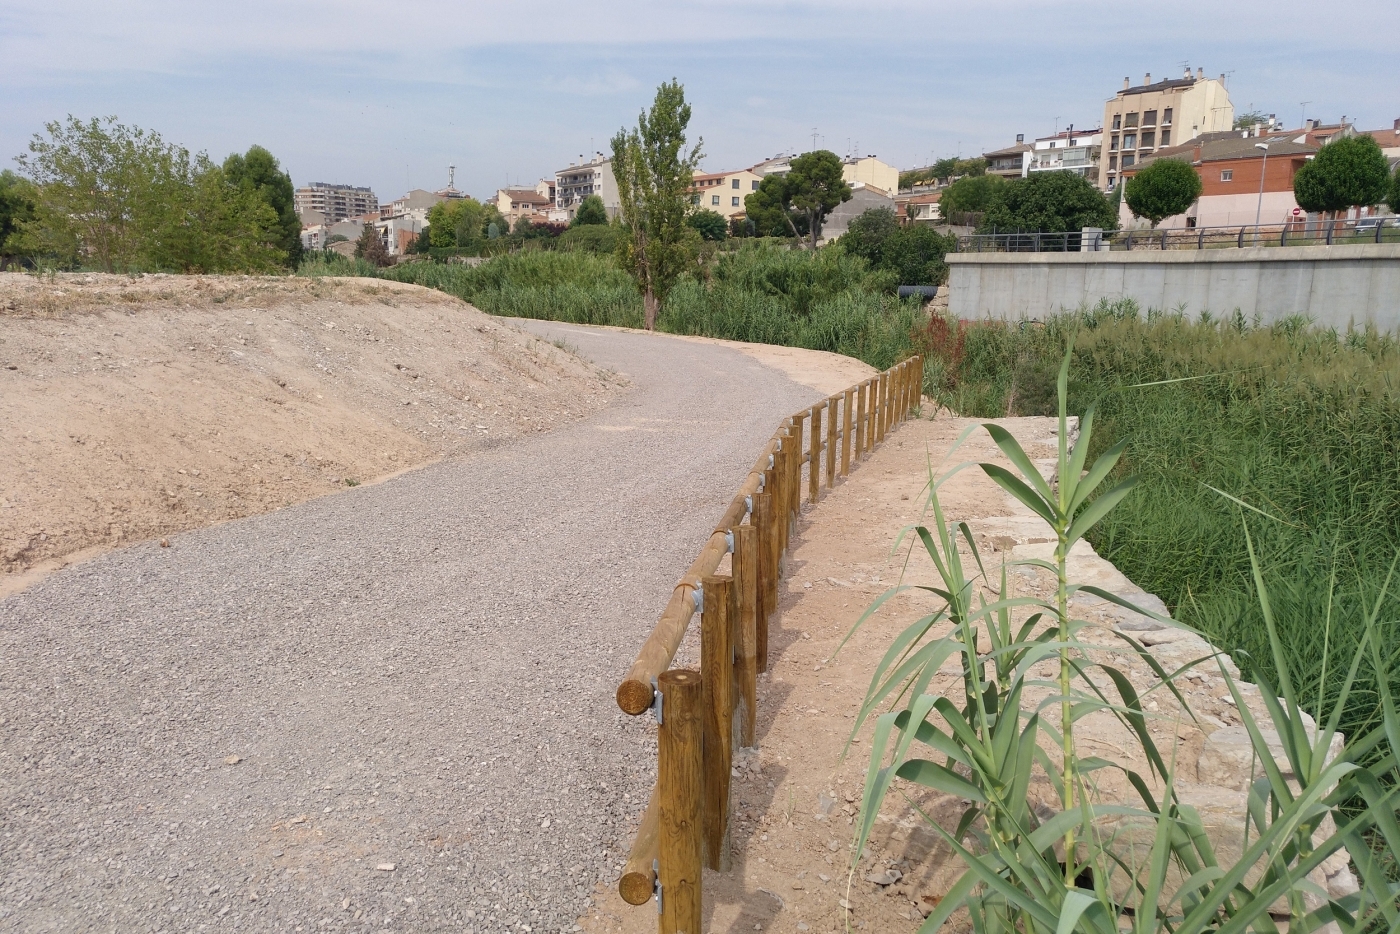 L’Ajuntament de Tàrrega ultima els treballs per habilitar un nou espai de passeig vora la riba del riu Ondara